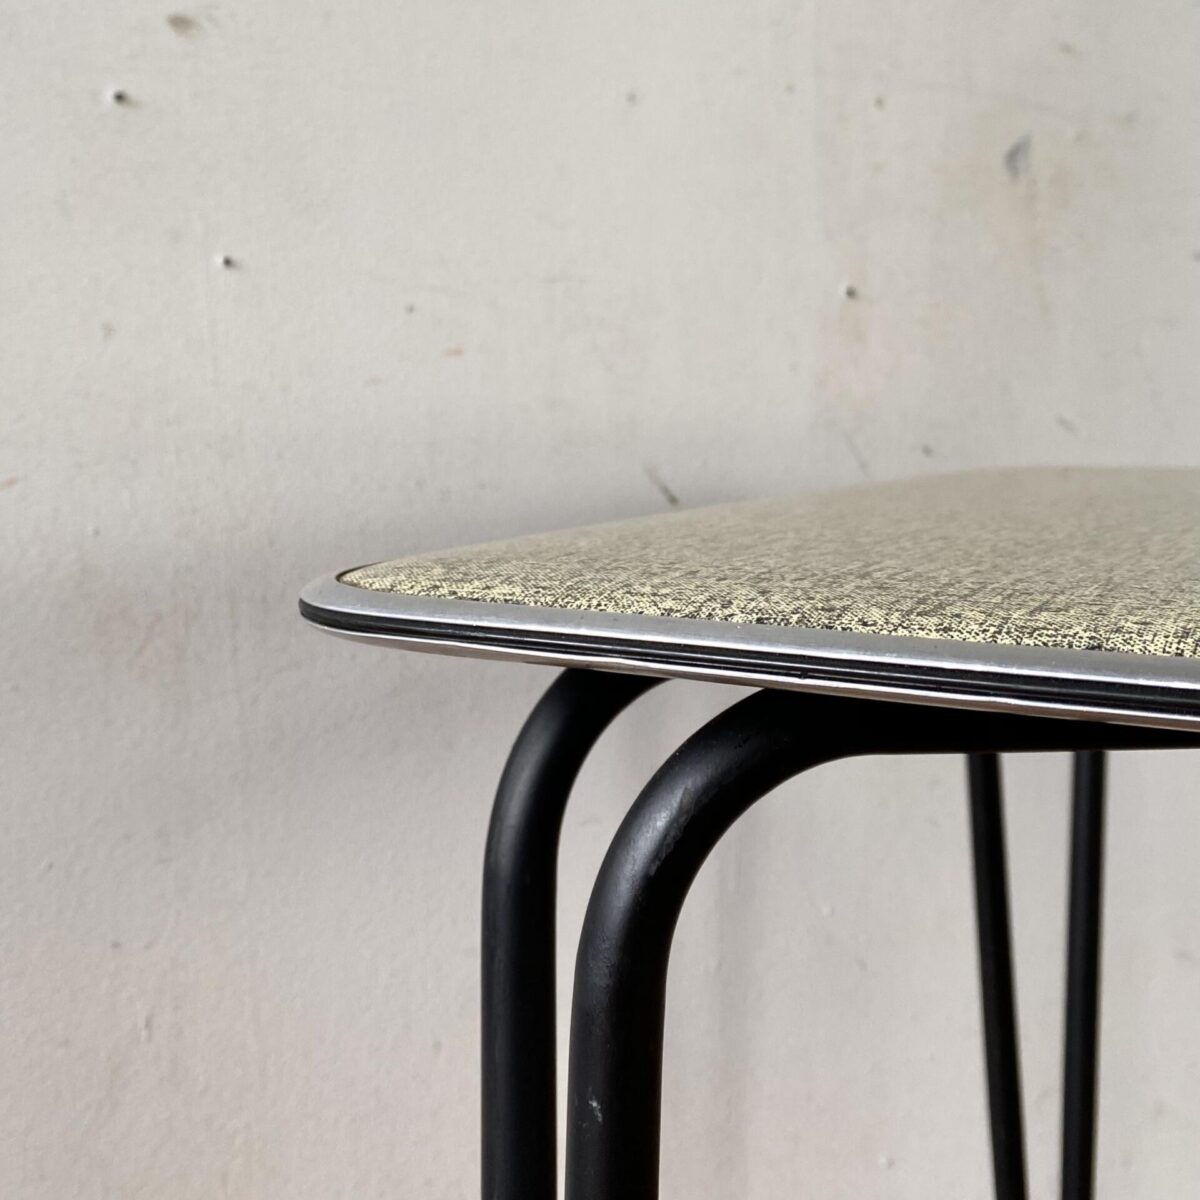 Deuxieme.shop 60er Jahre Tisch. Kleiner kompakter Küchentisch mit schwarzen konischen Stahlbeinen. 66x66cm Höhe 67cm. Das Werzalit Tischblatt ist grün-schwarz meliert, zur Kante hin verjüngt, und mit einer Aluminiumkante eingefasst. Der Tisch eignet sich auch als Gartentisch oder Balkontisch. Die Hairpin artigen Tischbeine sind schwarz lackiert und mit Gummifüssen bestückt. Die Tischkante, aus Alu, ziert ausserdem ein feines eingepresstes Kunststoff Filet. 